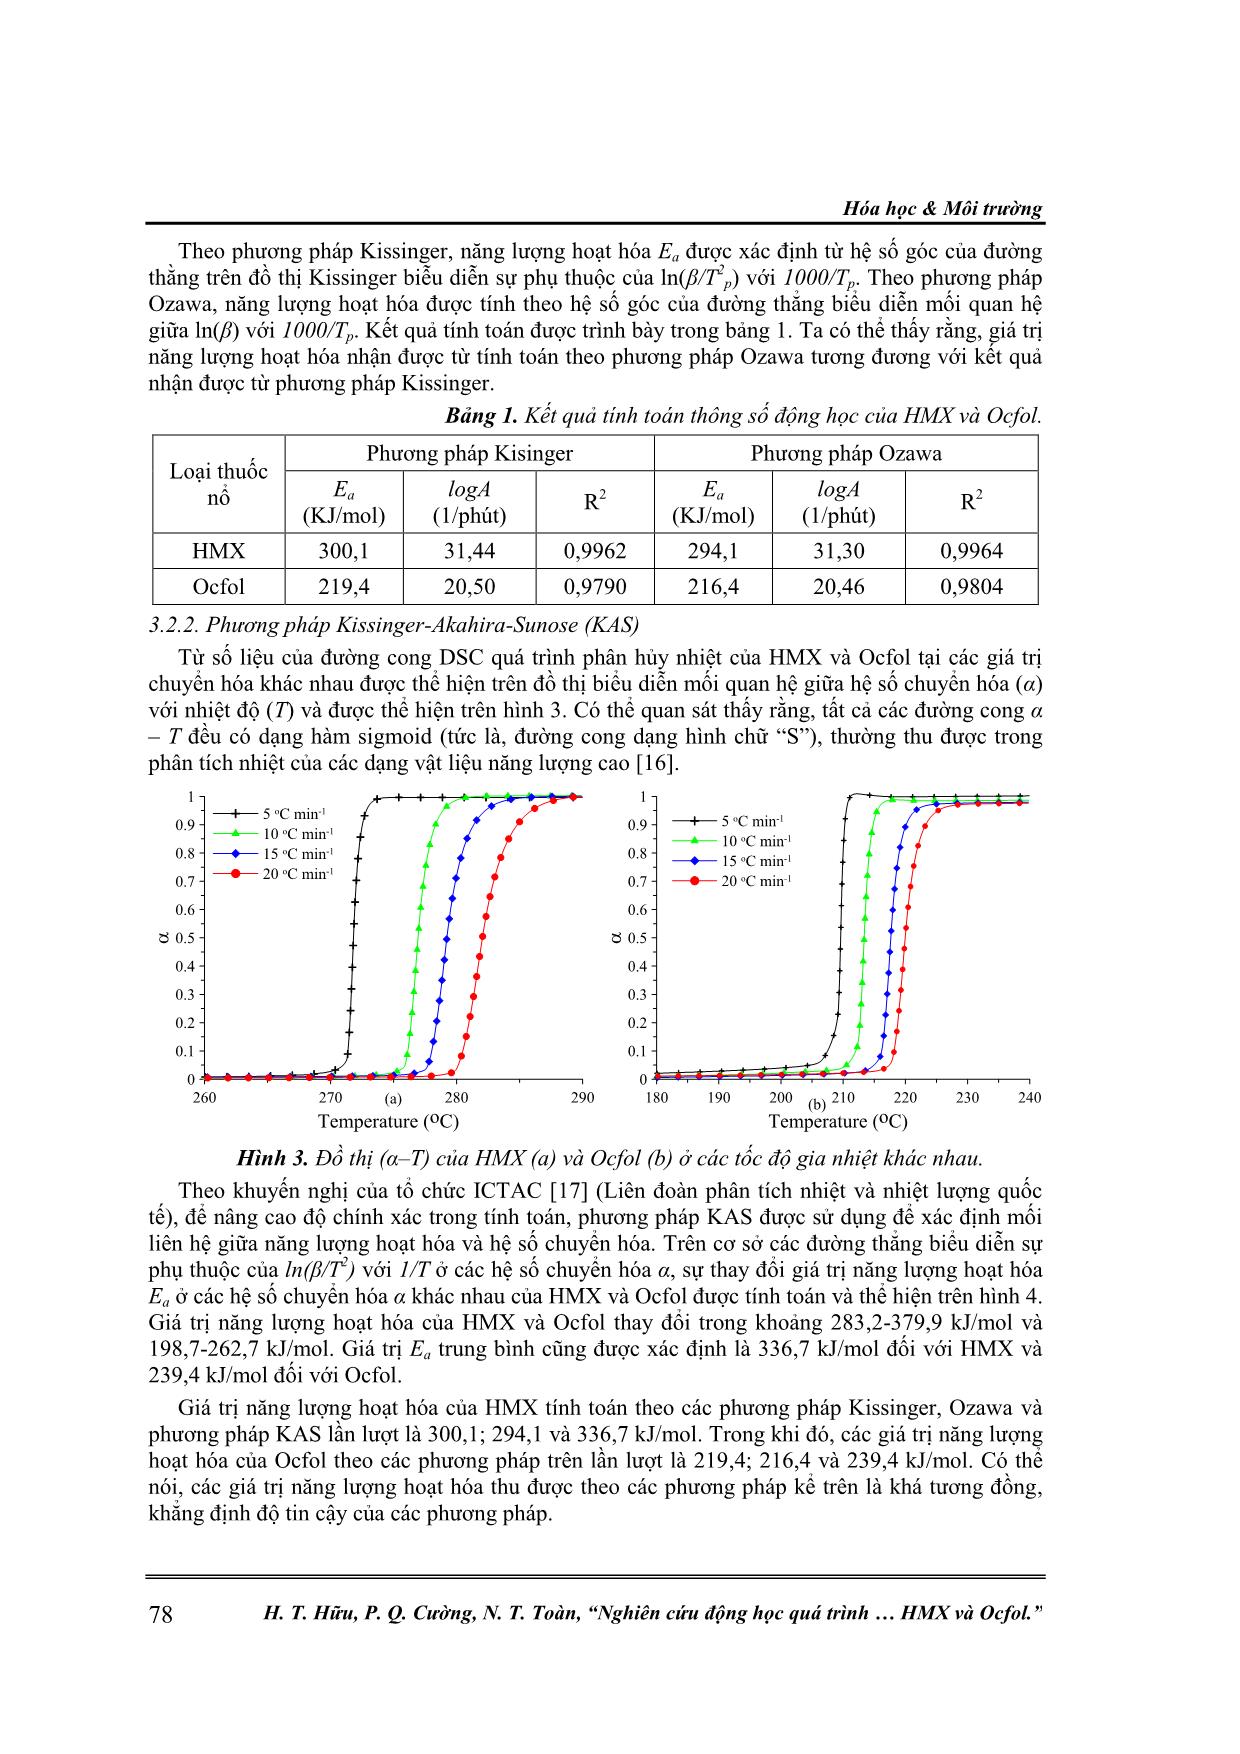 Nghiên cứu động học quá trình phân hủy nhiệt của thuốc nổ HMX và Ocfol trang 6